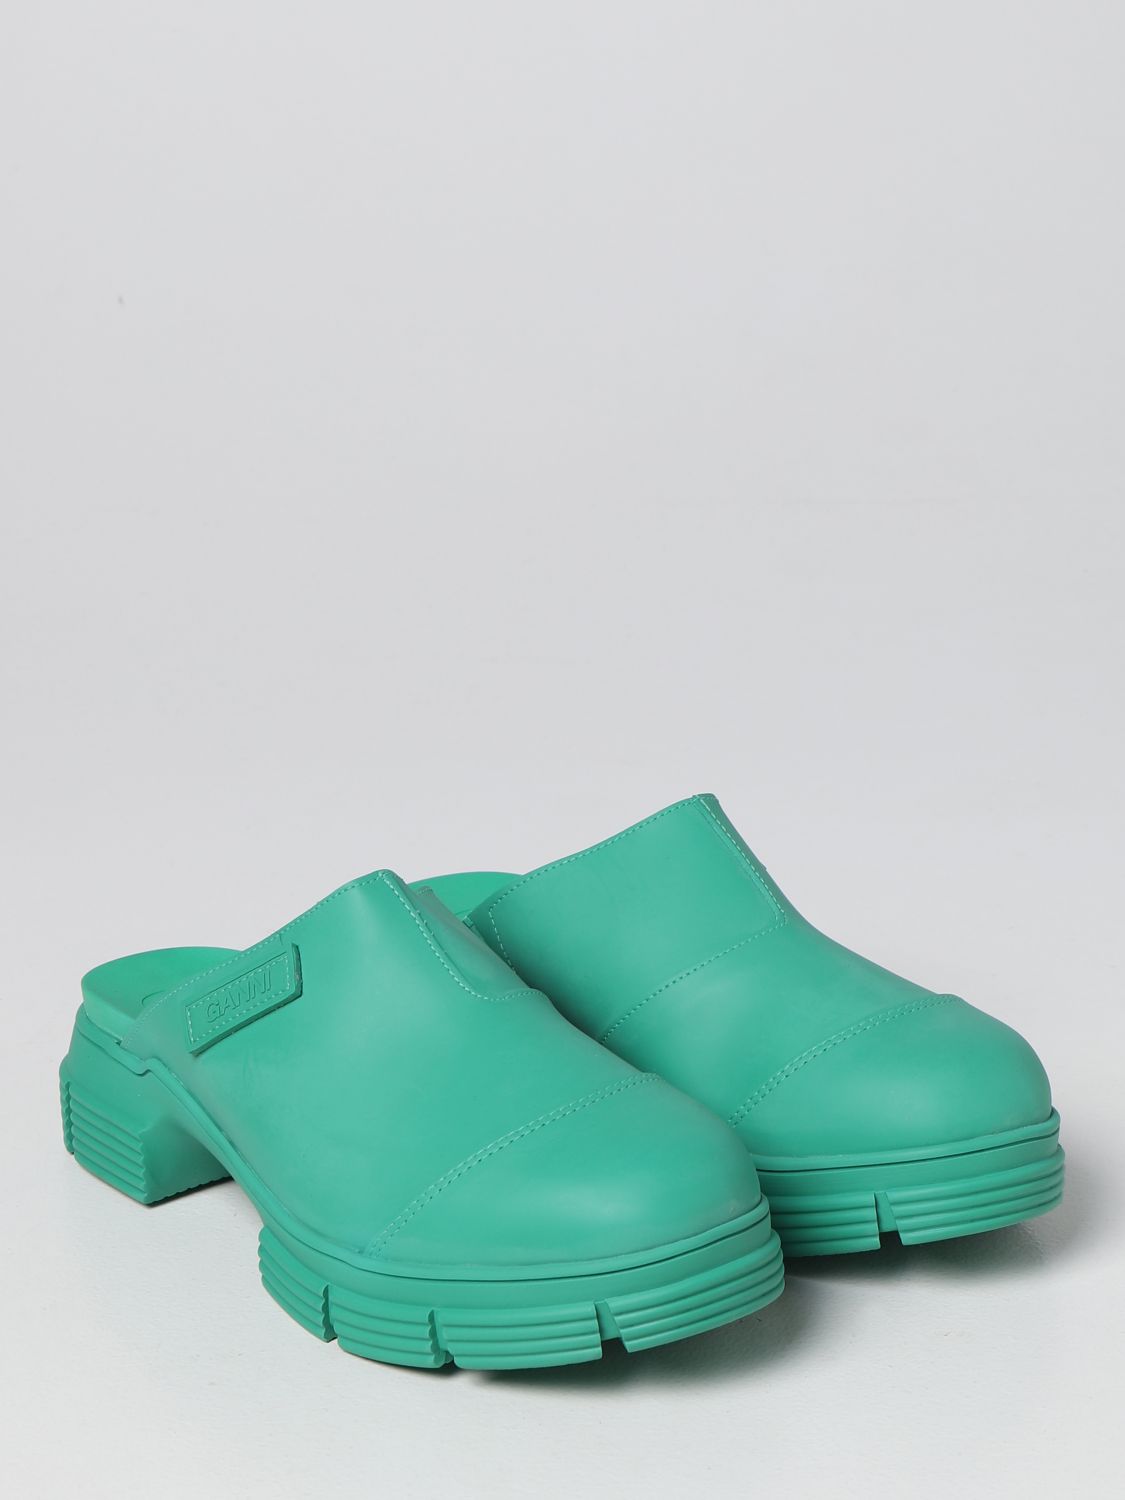 Flache Schuhe Ganni: Ganni Damen Flache Schuhe grün 2